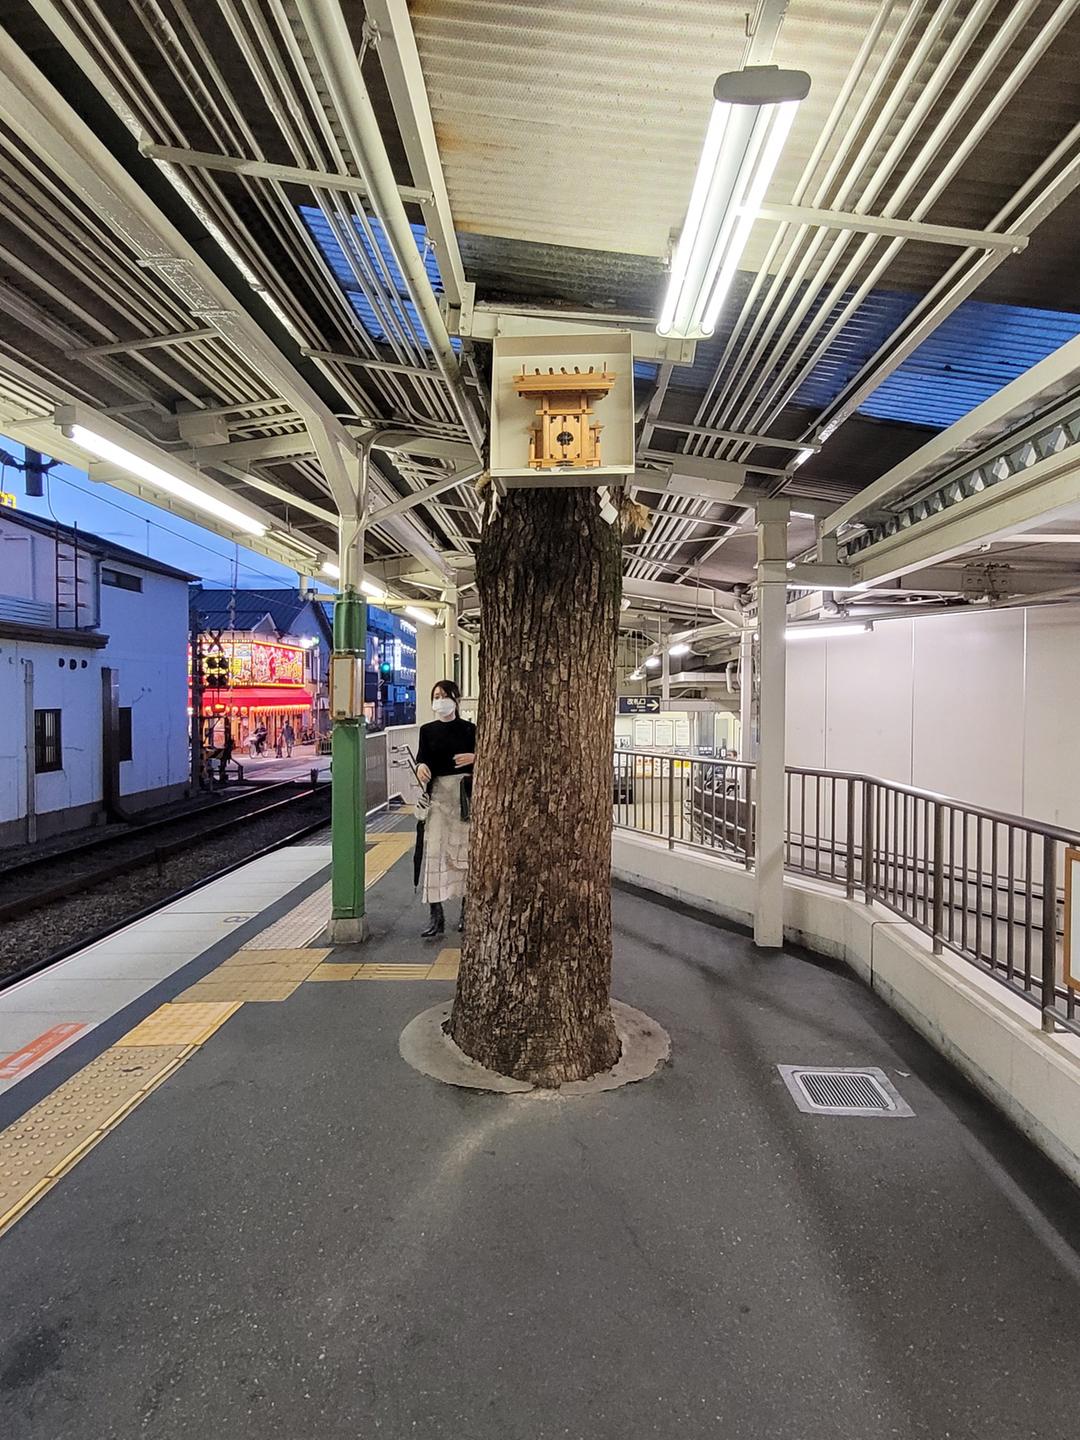 Aus einem Bahnsteig ragt ein Baumstamm empor, in einem Kasten in etwa zweieinhalb Meter Höhe ist daran ein Kultgegenstand aus Holz angebracht.